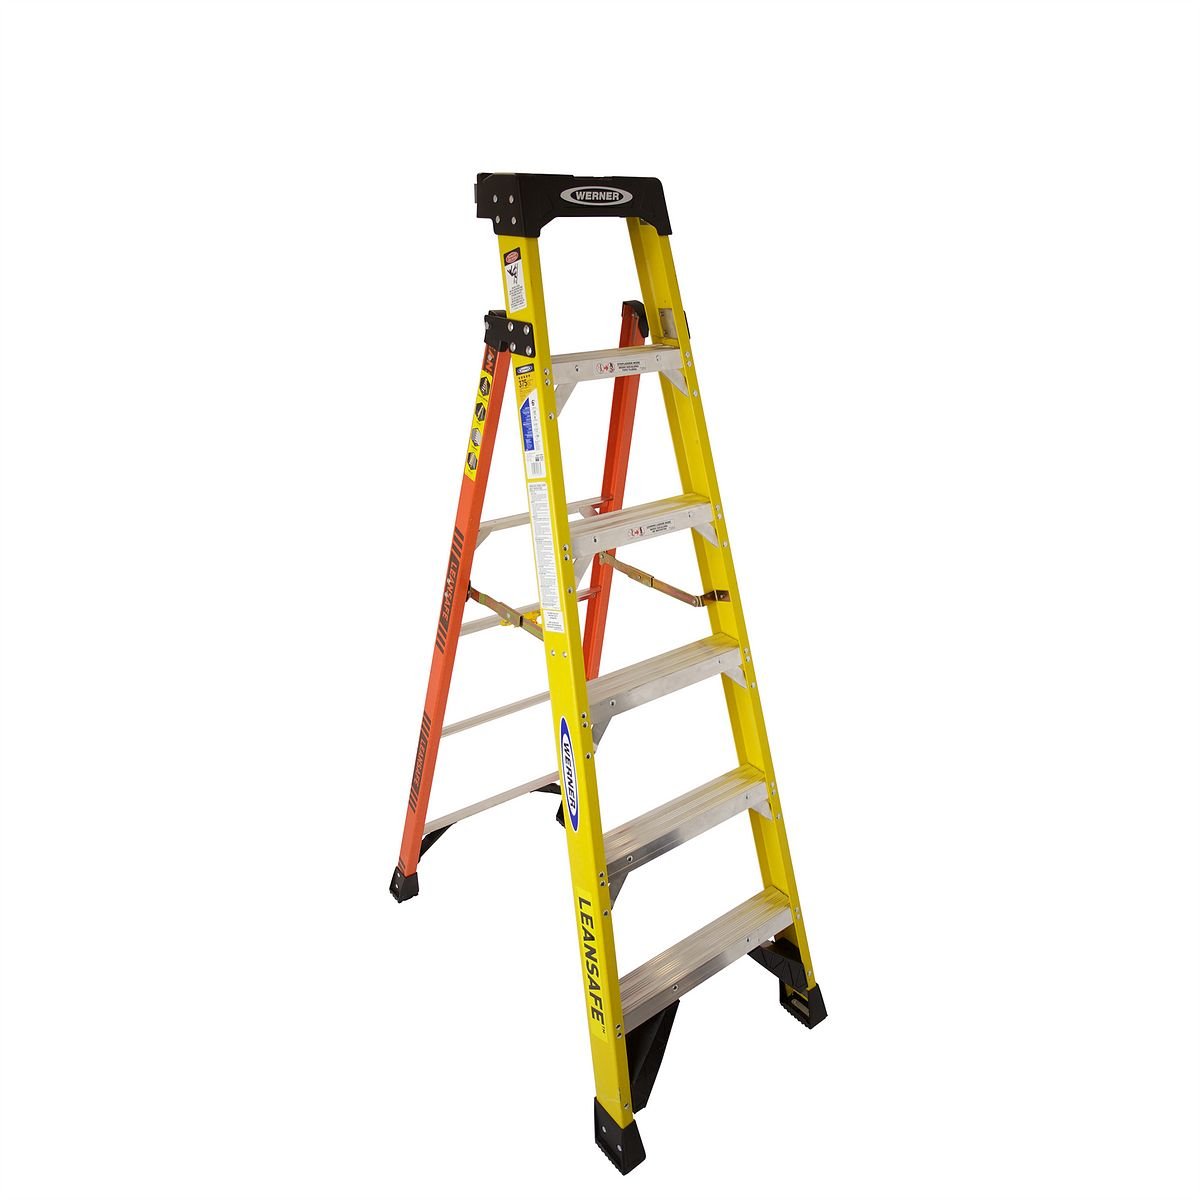 Distributor of Werner L7306 6 ft. Fiberglass Leaning Ladder in UAE